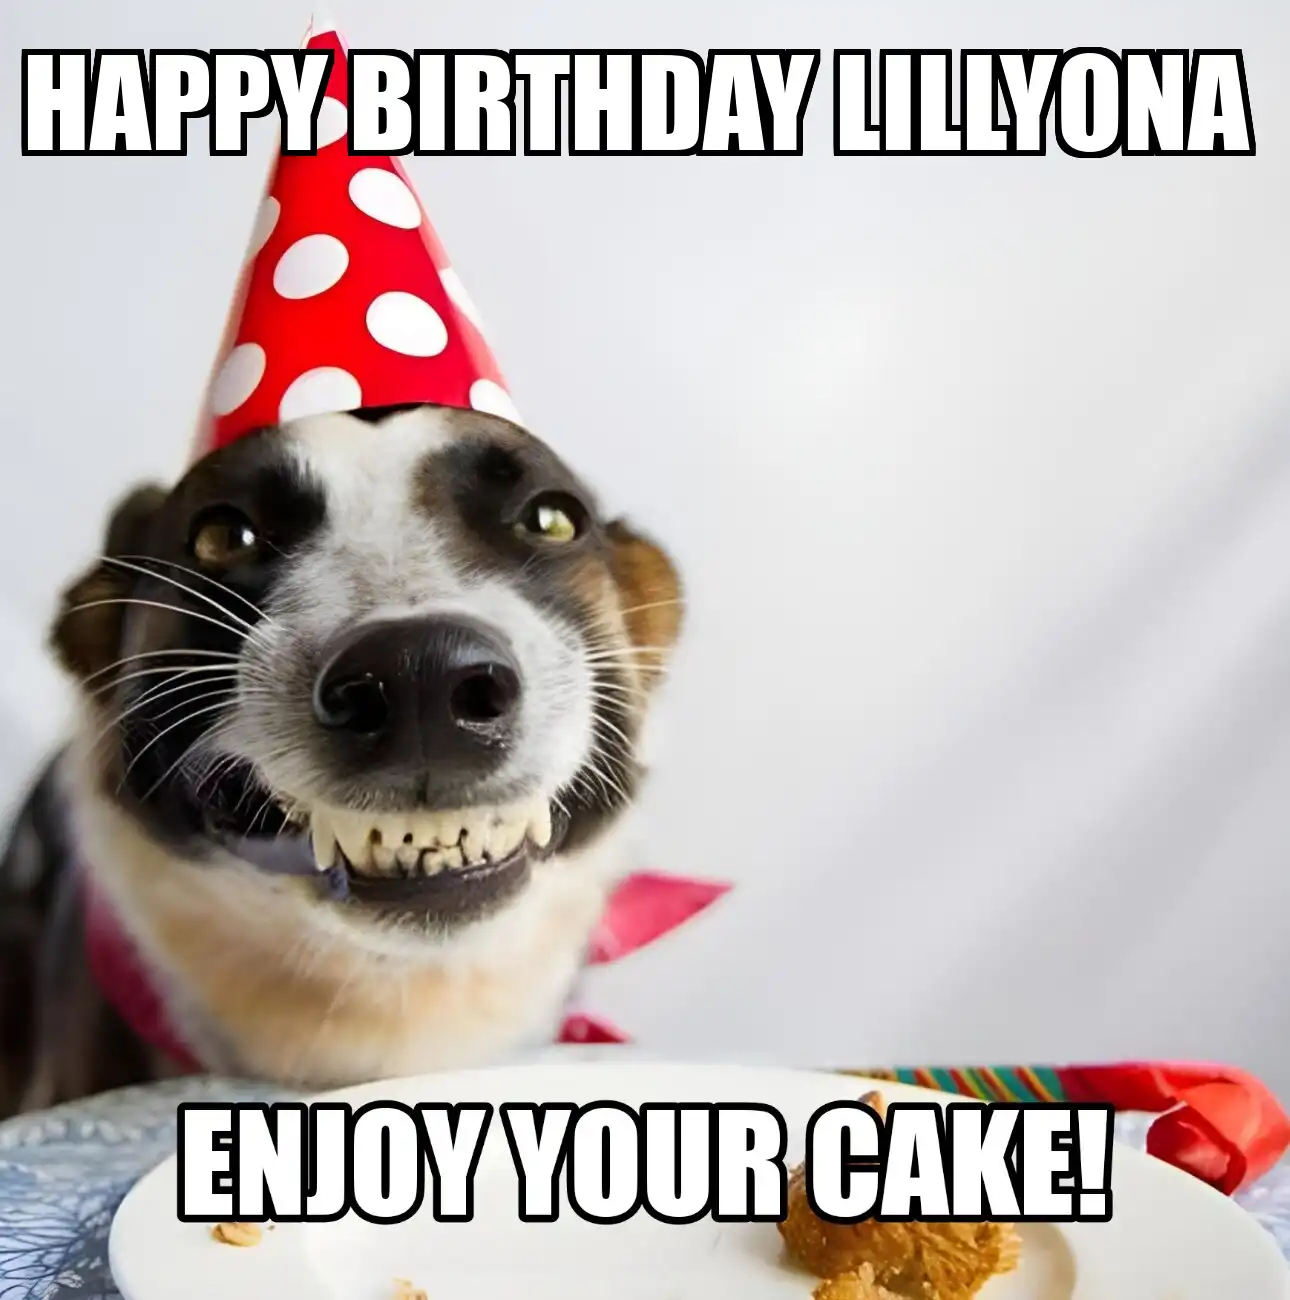 Happy Birthday Lillyona Enjoy Your Cake Dog Meme